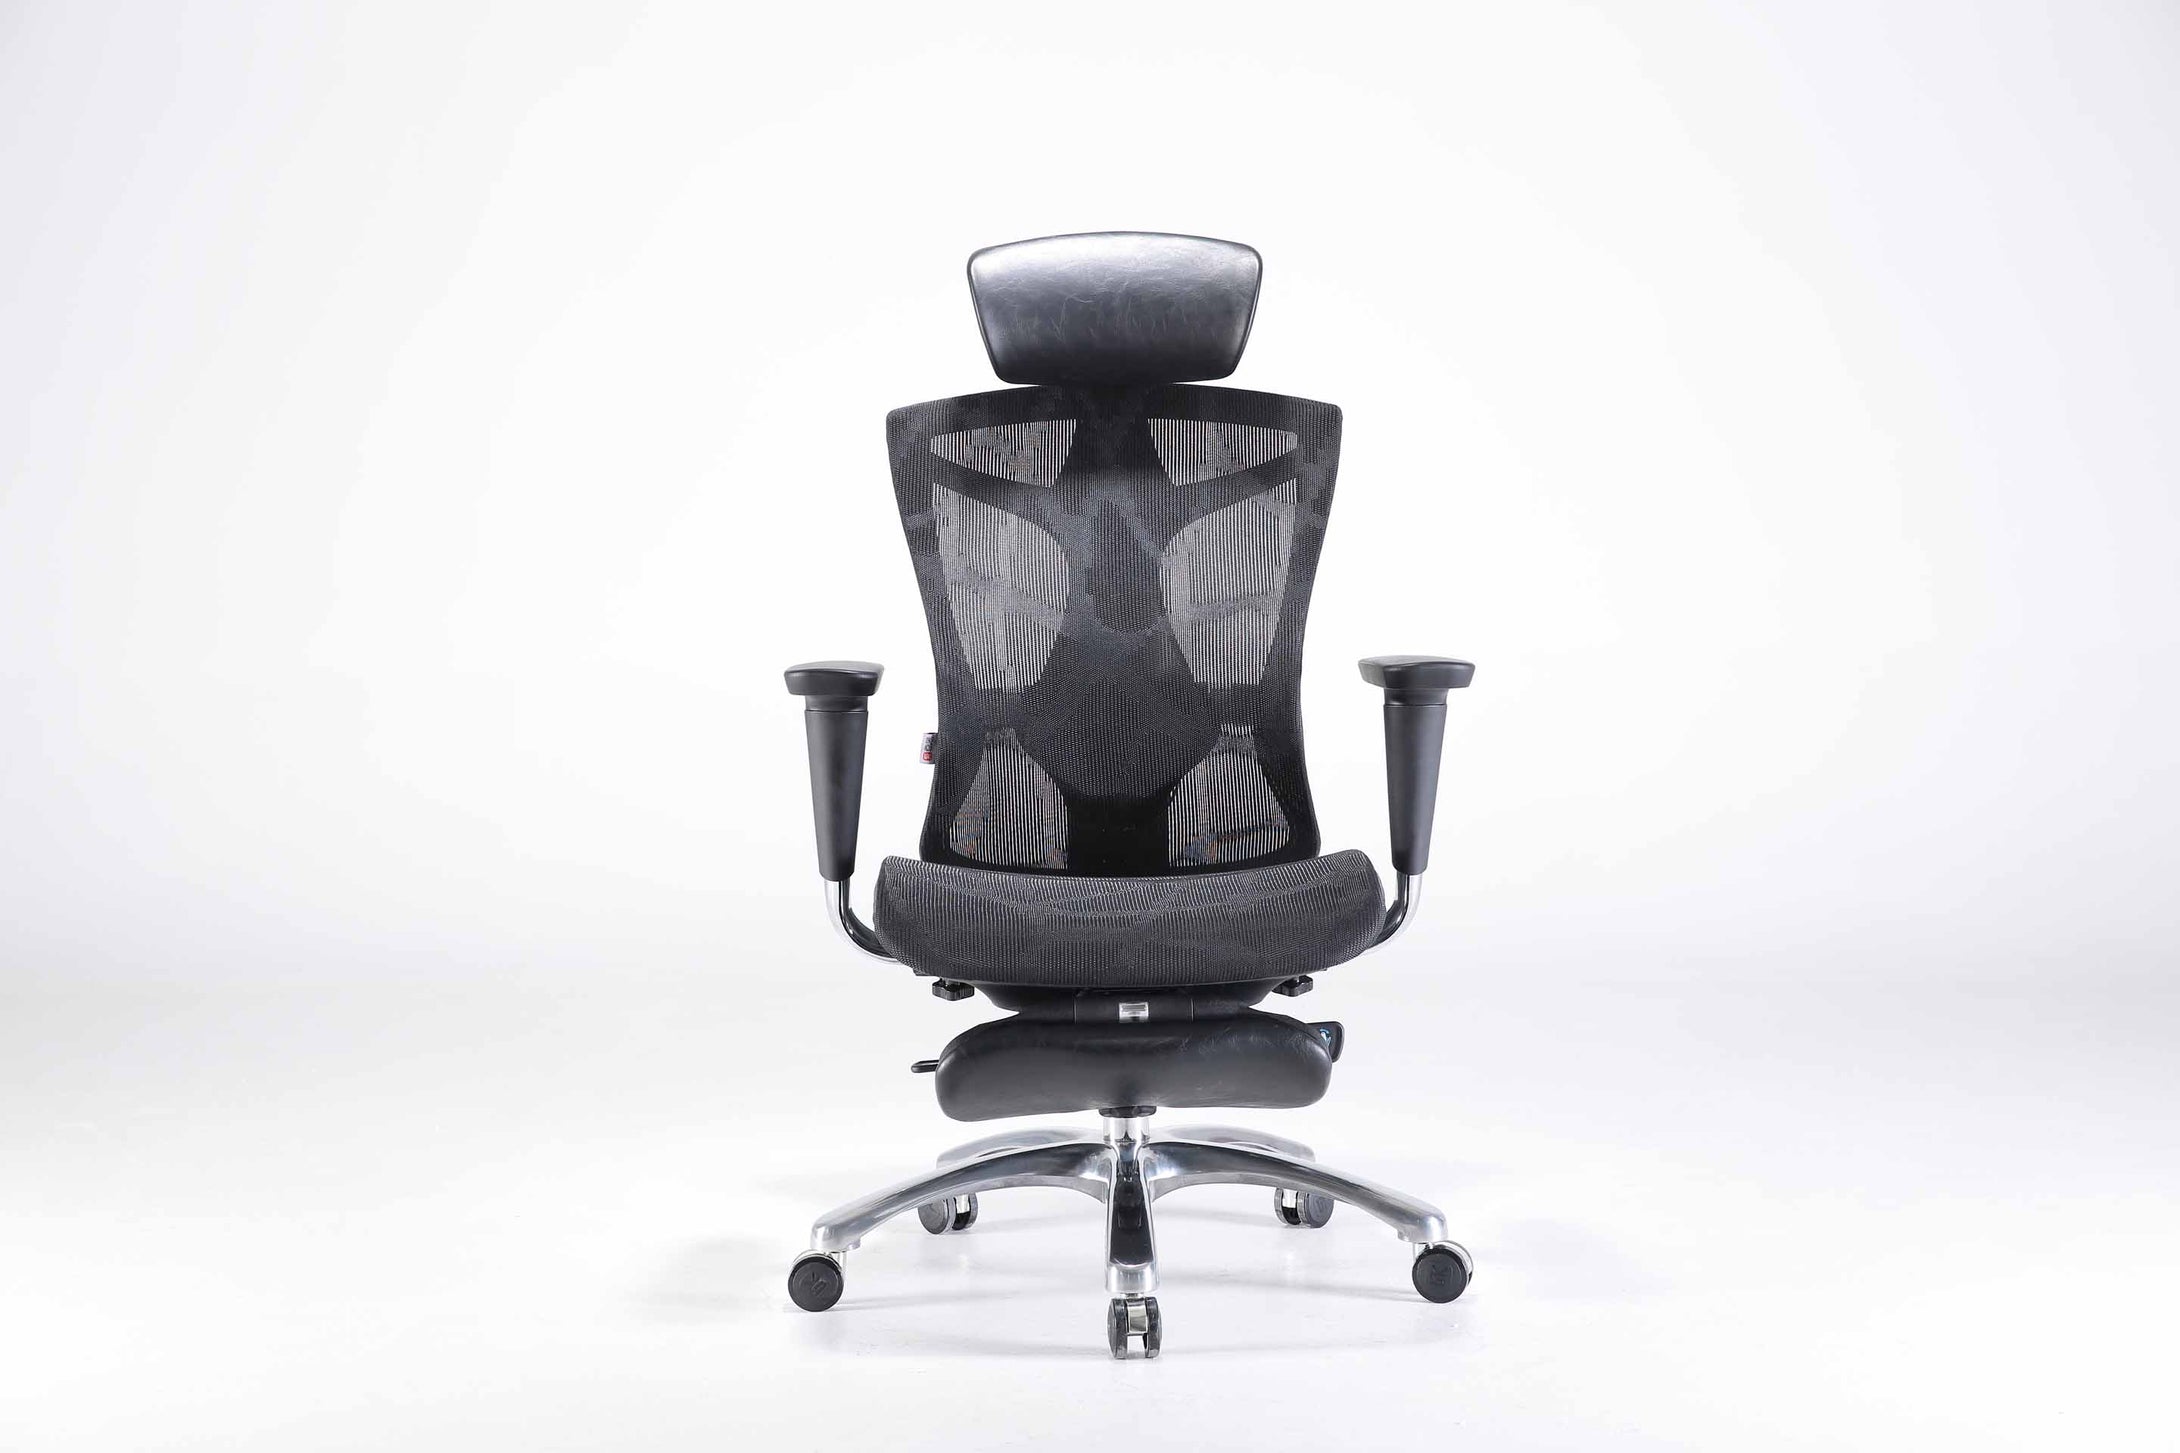 Sihoo V1 Ergonomic Office Chair